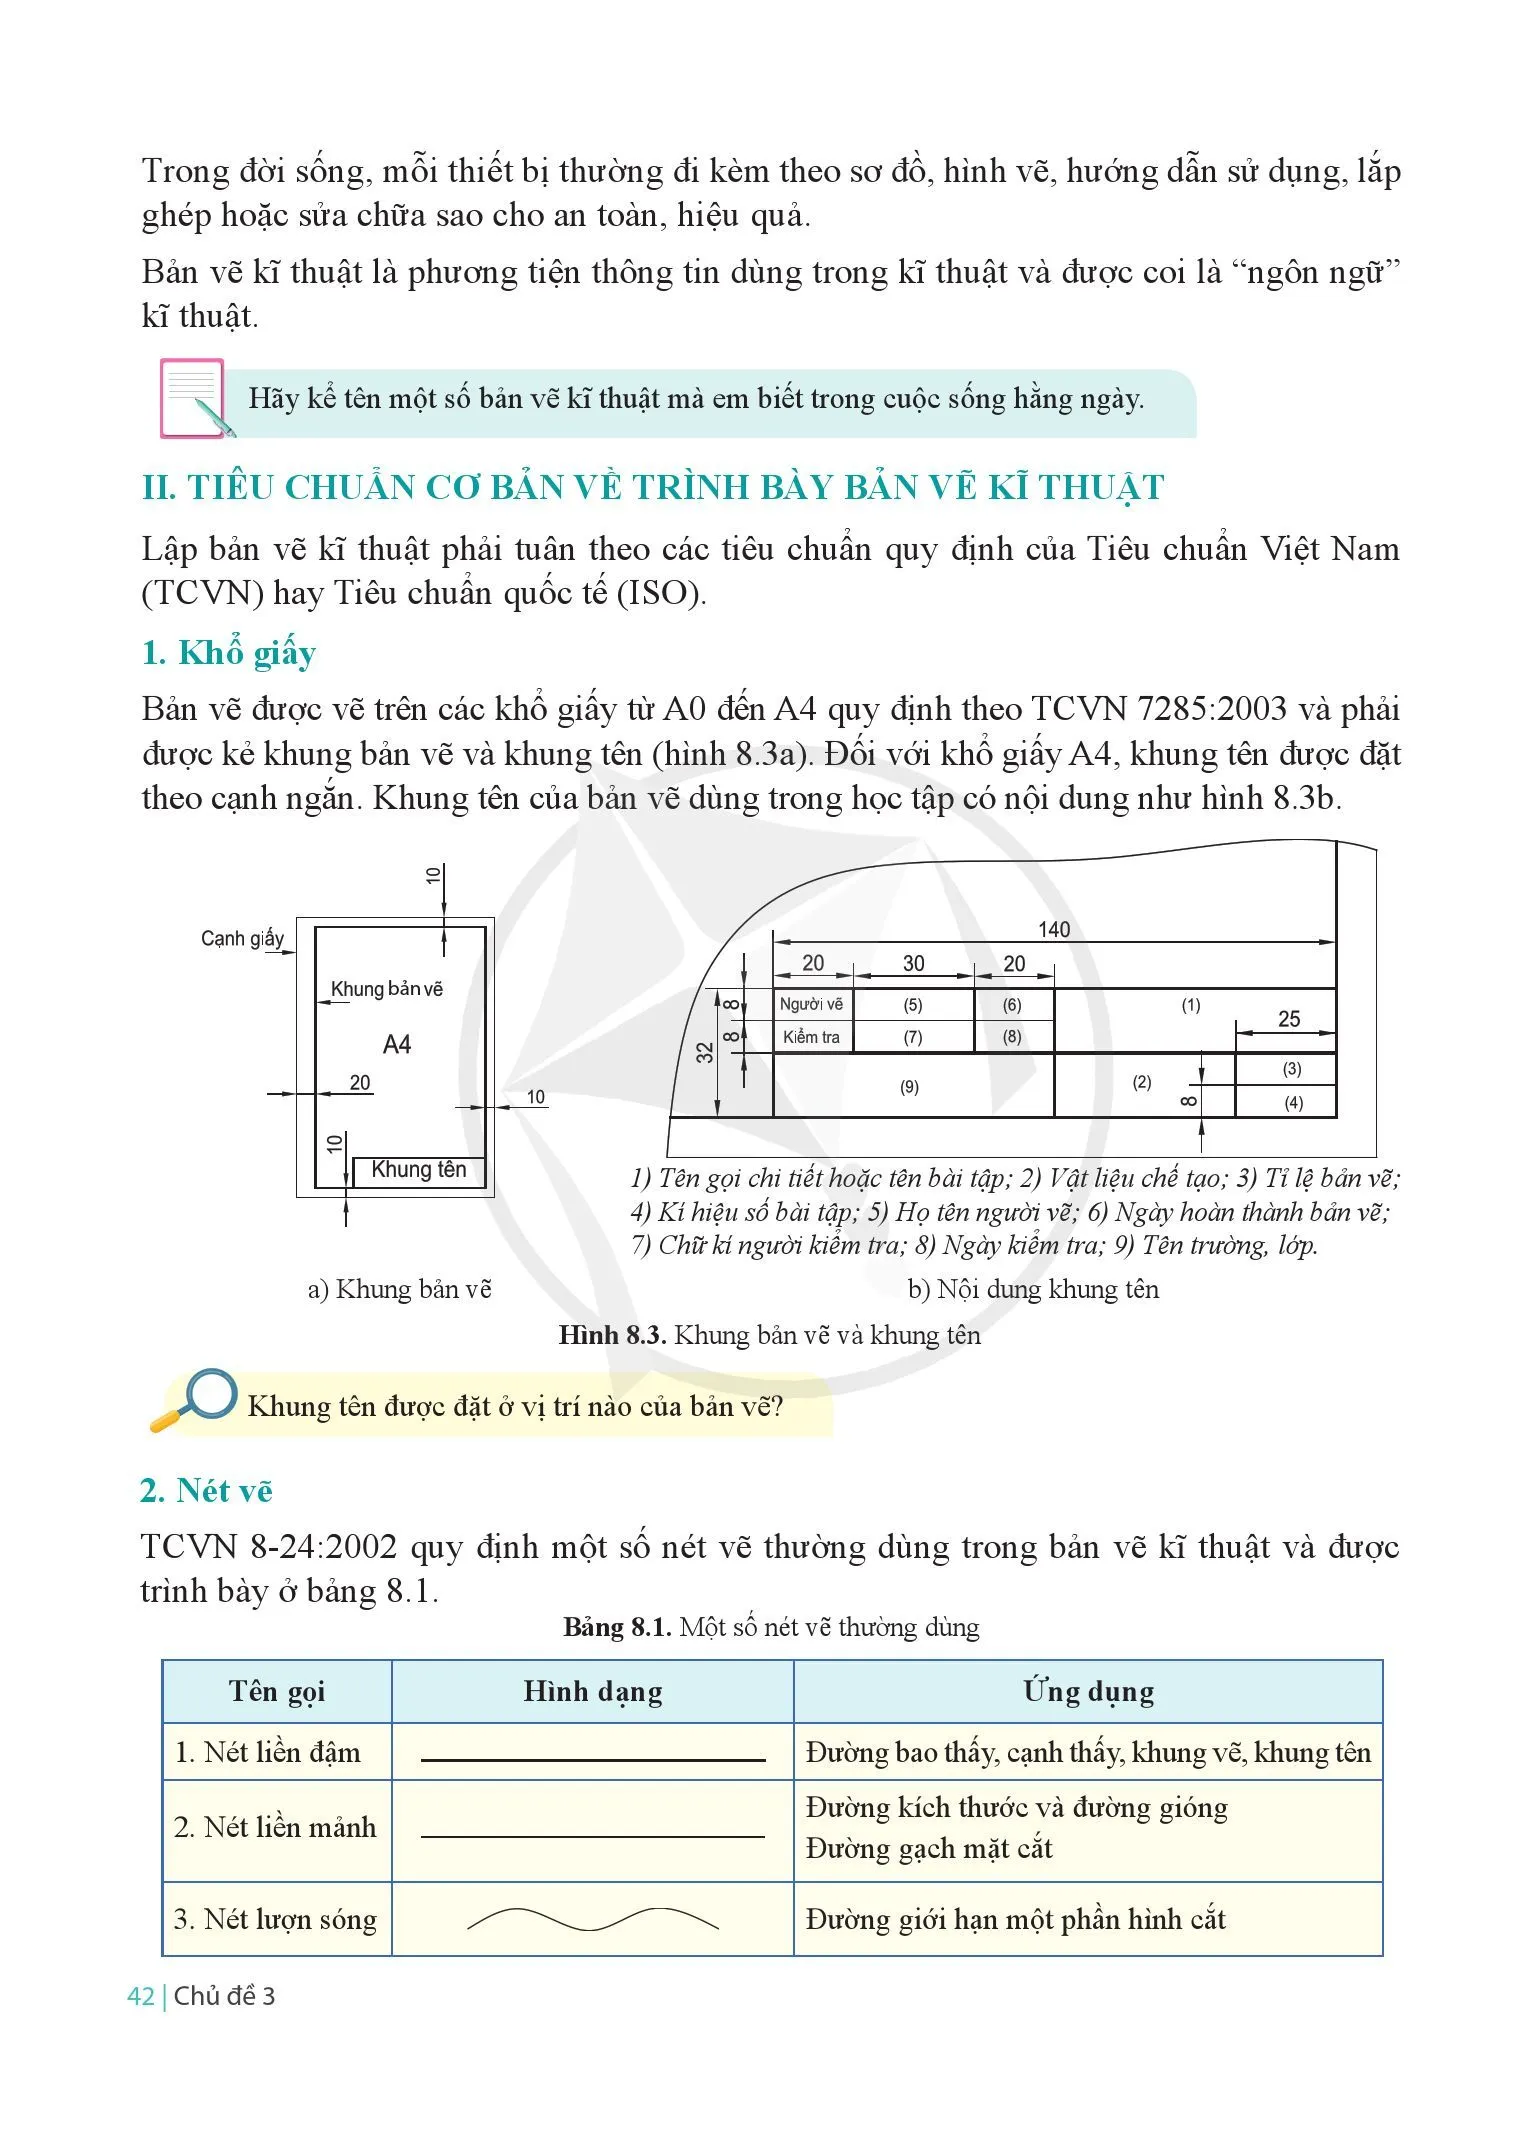 Bài 8 Bản vẽ kĩ thuật và các tiêu chuẩn trình bày bản vẽ kĩ thuật